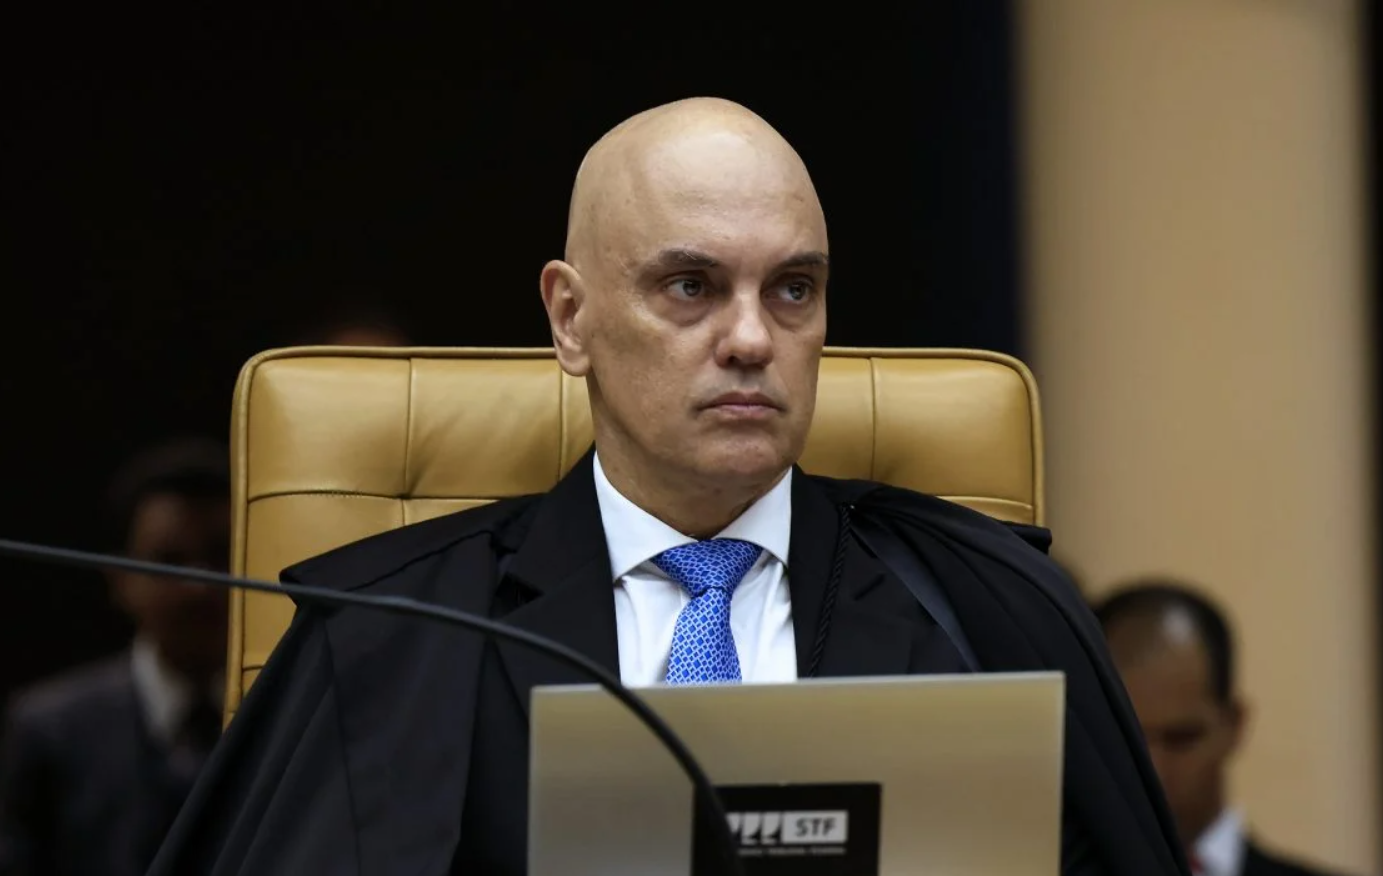 Moraes sobe tom no voto contra tese de que Forças Armadas poderiam atuar como poder moderador: “interpretação golpista”